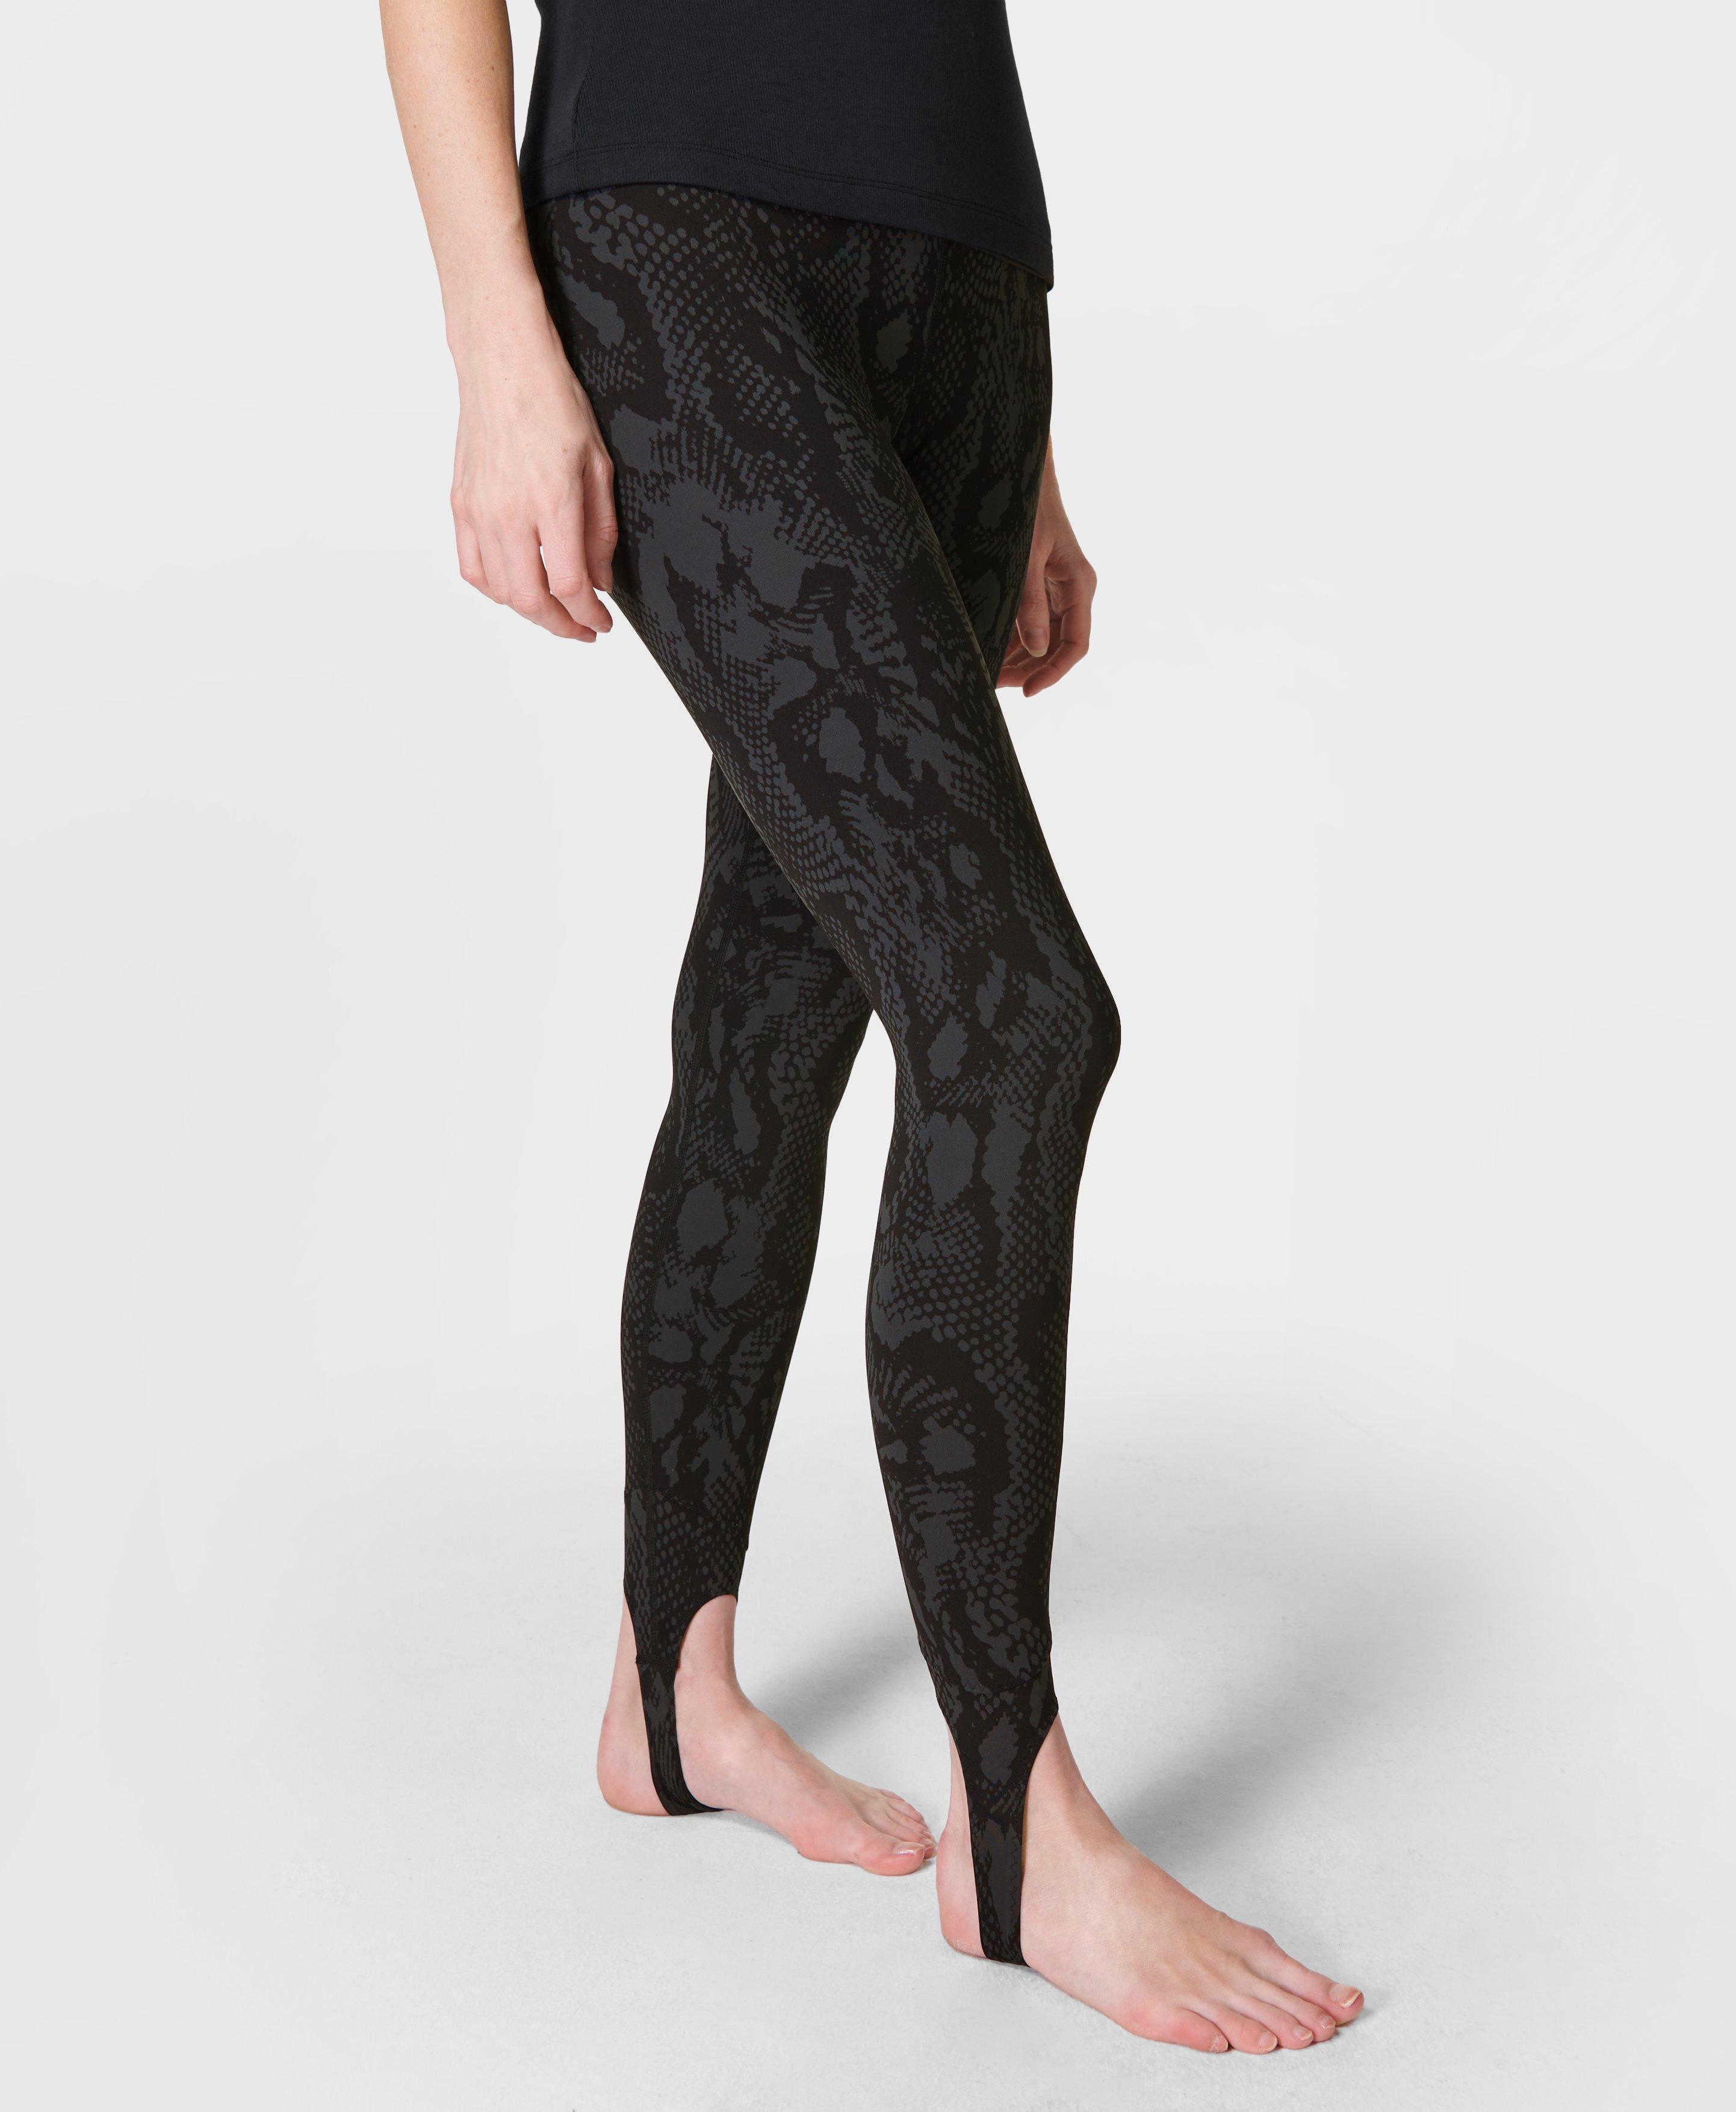 Orbit Stirrup Leggings - Black Snake Print, Women's Leggings